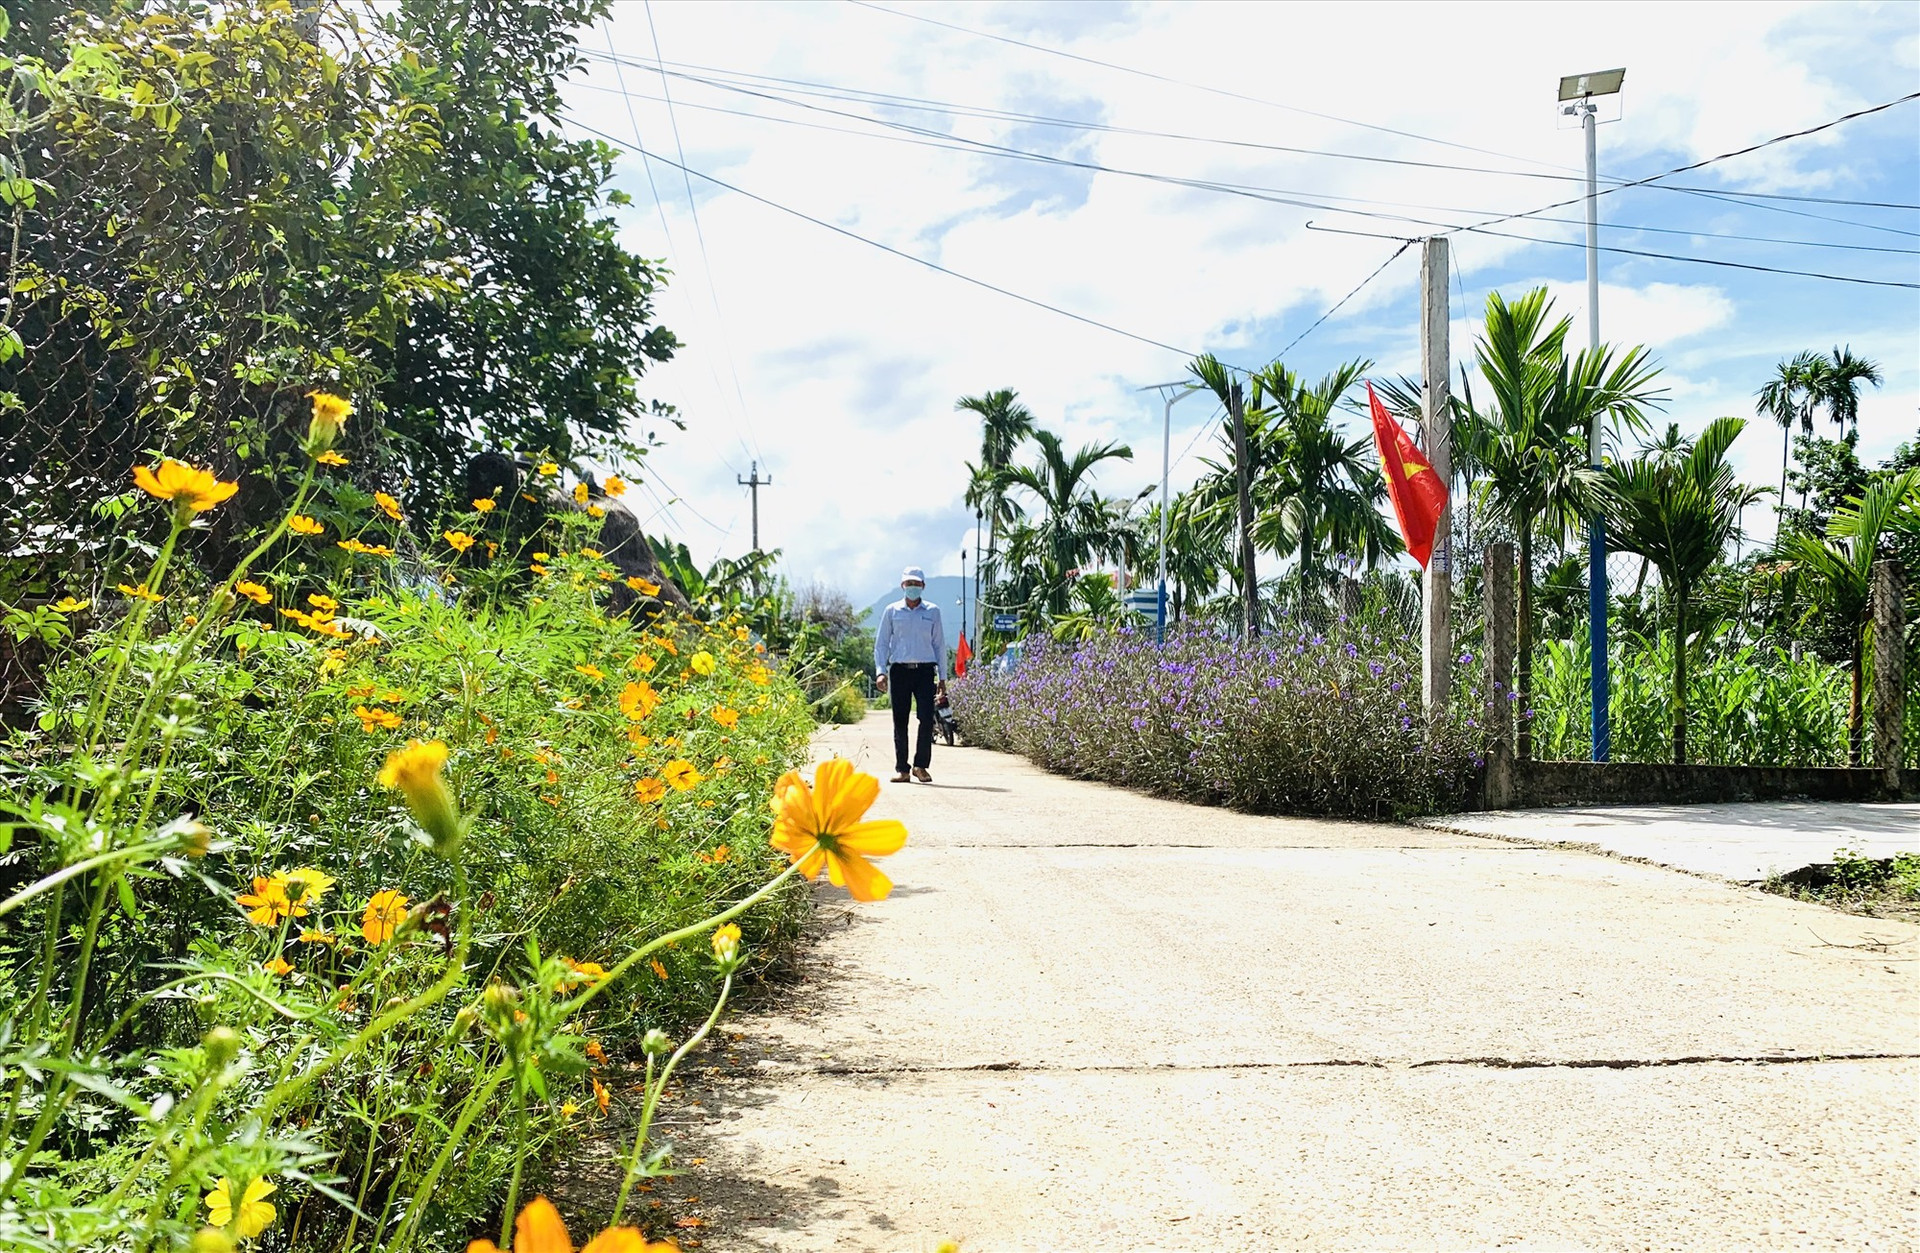 Hệ thống đường ngõ xóm, kiệt ở thôn Thu Bồn Tây rộng thoáng và bố trí trồng hoa thay cỏ dại. Ảnh: T.L